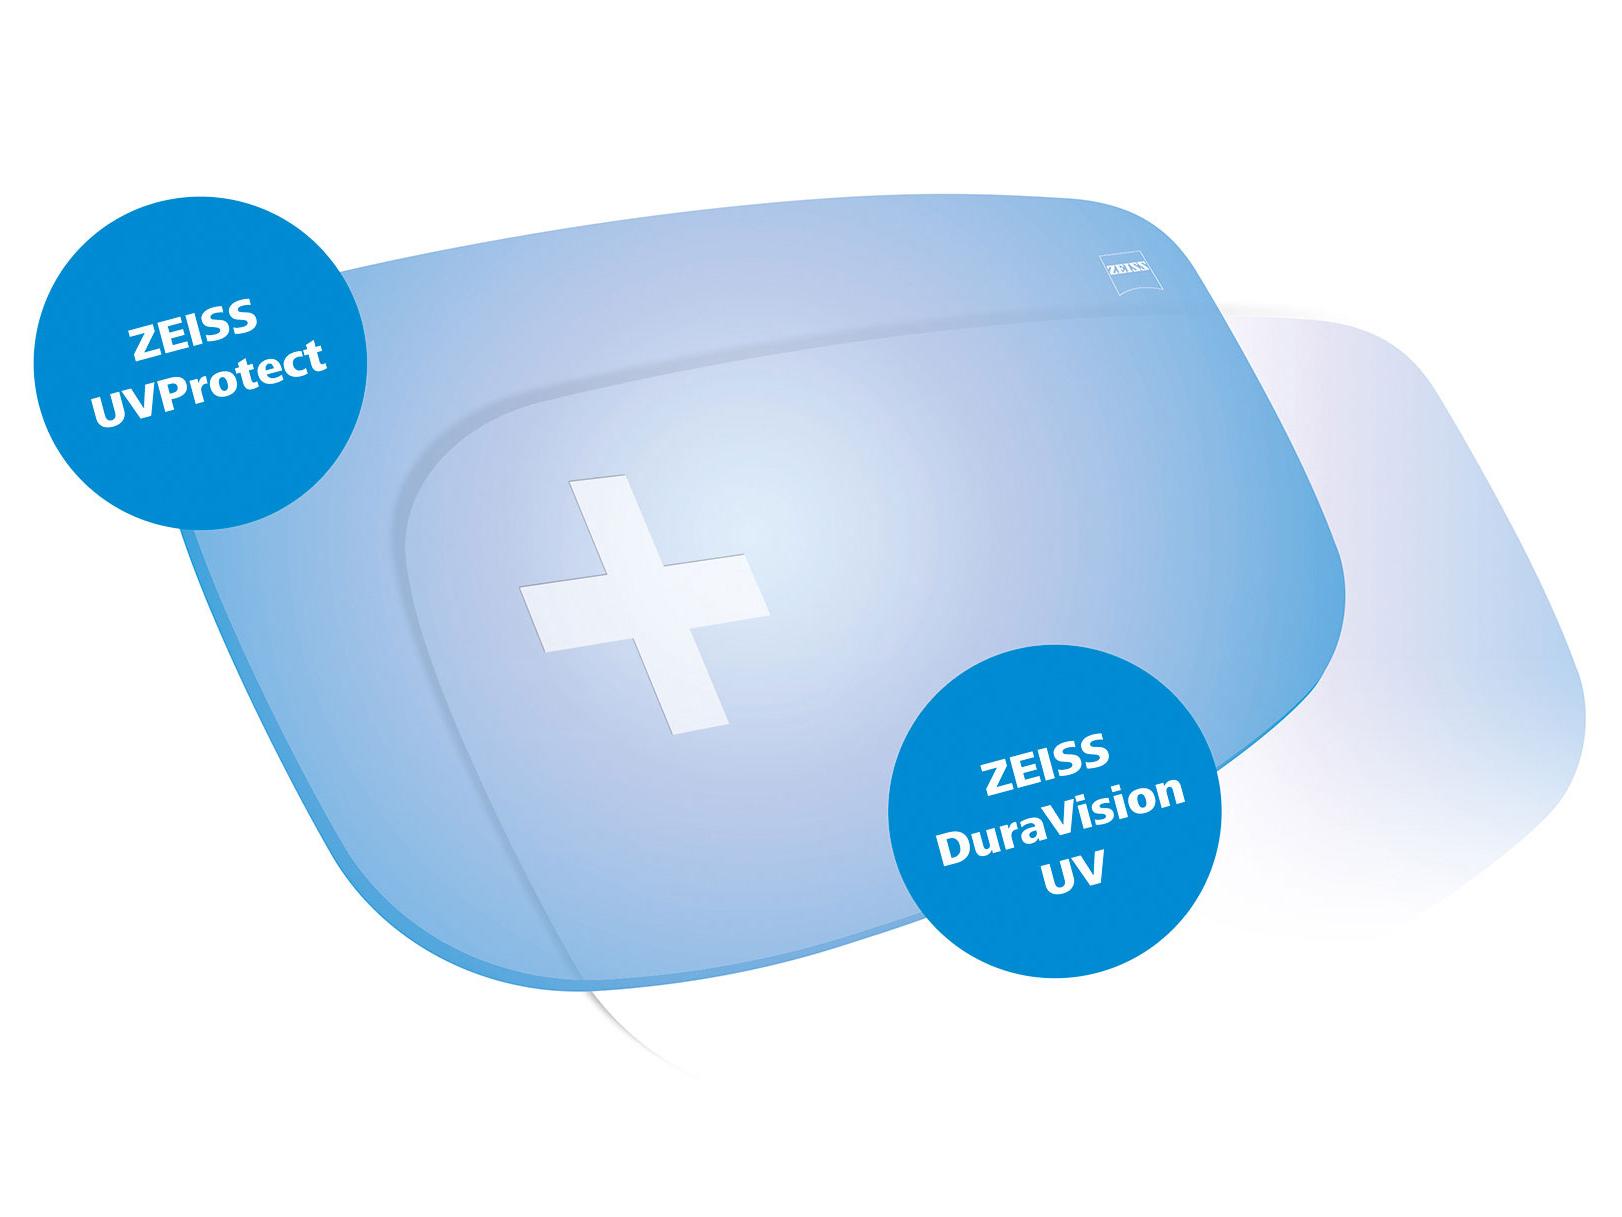 Toate lentilele ZEISS sunt livrate standard cu protecție totală UV în toate direcțiile. Graficul prezintă două soluții.